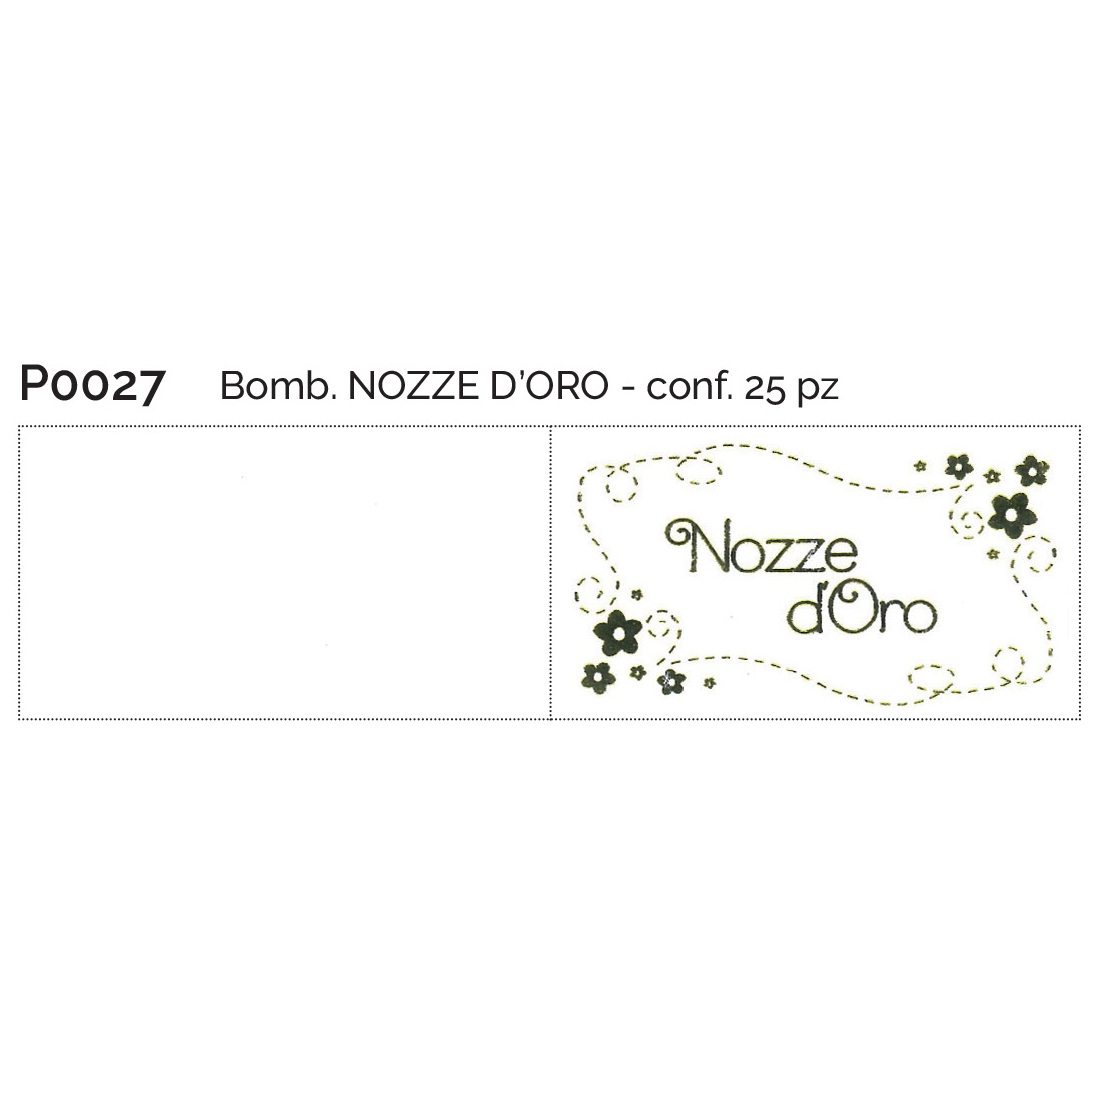 BIGLIETTINO NOZZE D'ORO 25PZ - Bigliettini Bomboniere - Nuovi arrivi - Regali e Bomboniere